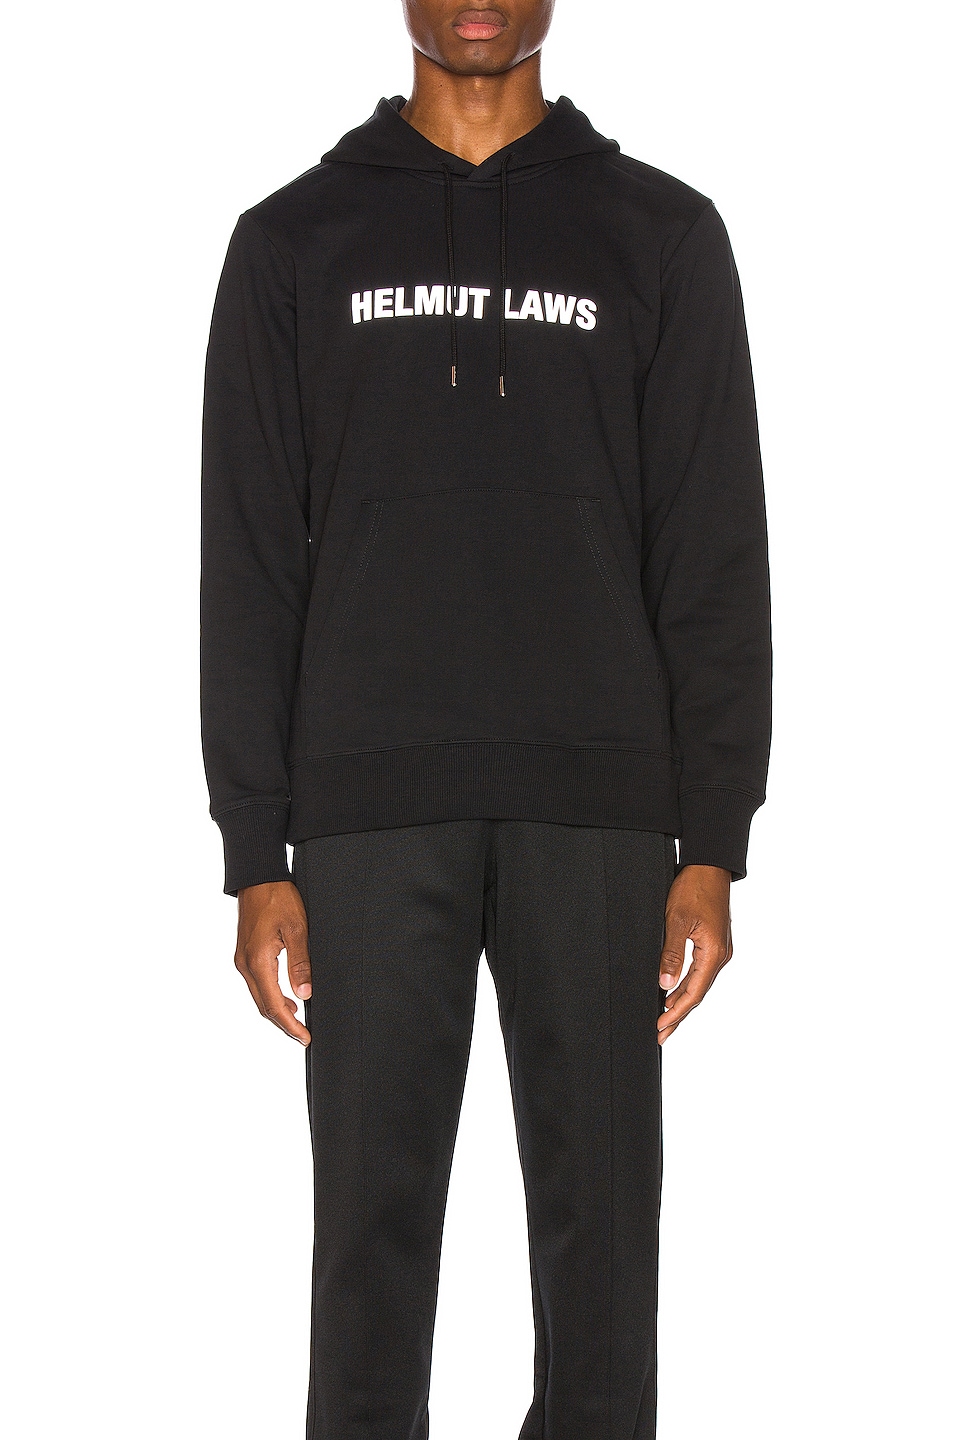 Image 1 of Helmut Lang Laws Hoodie in Black Basalt